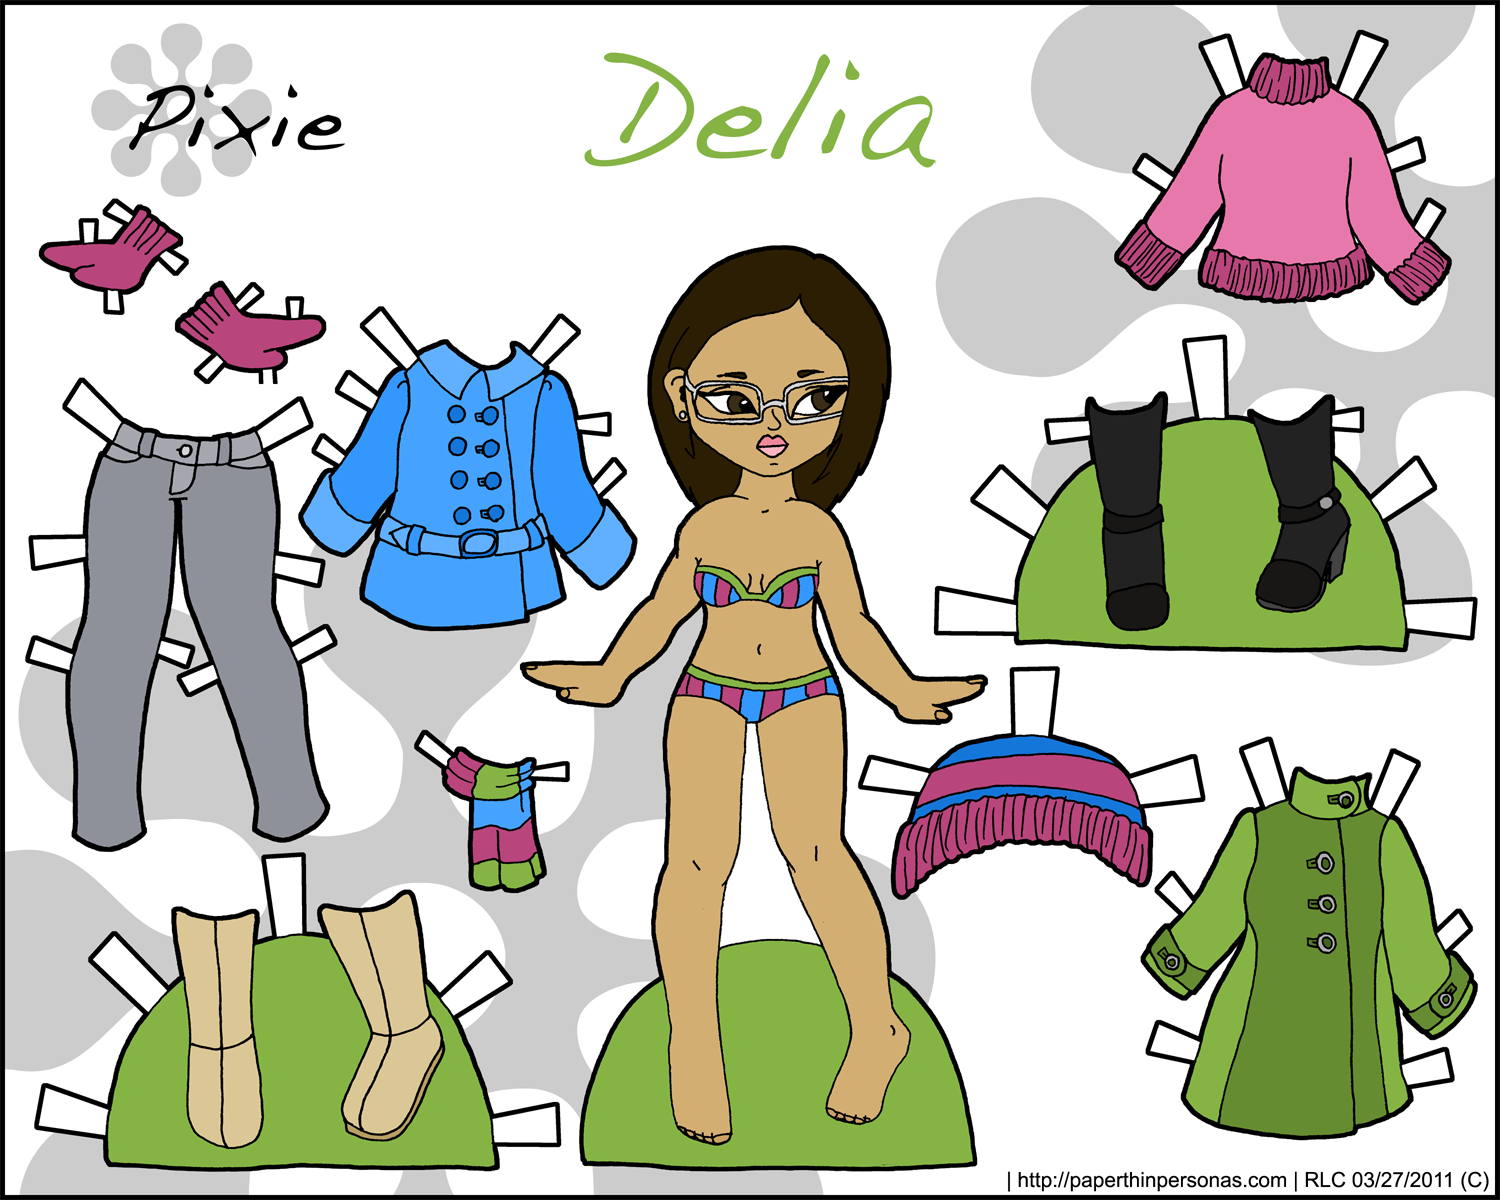 Pixie бумажные куклы с одеждой